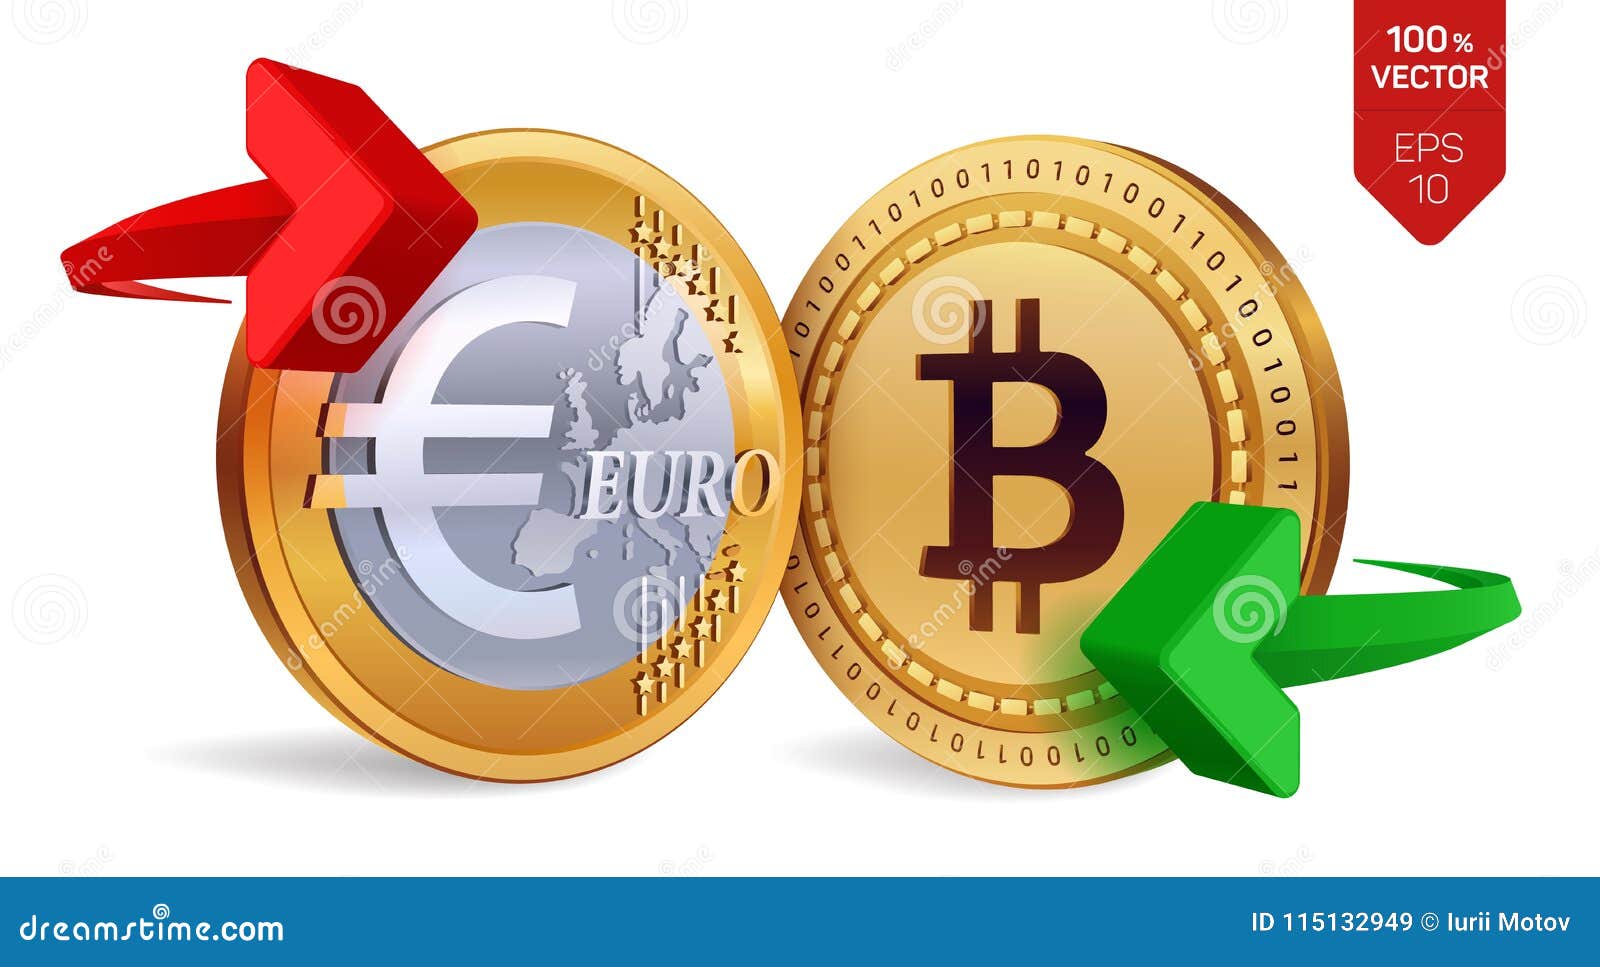 euro crypto coin geriausios dvejetainių opcionų prekybos sistemos